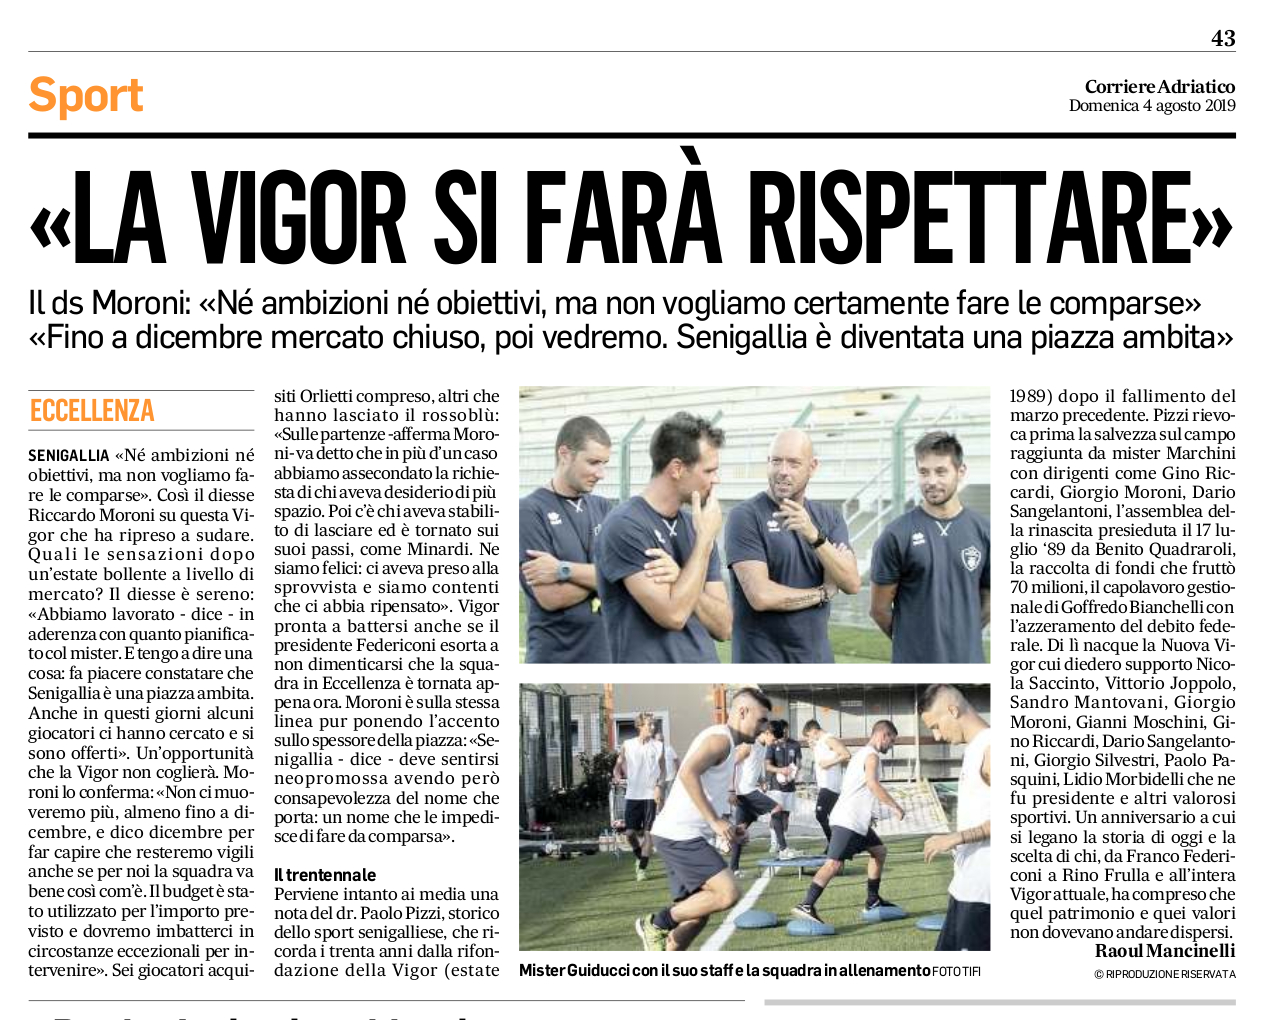 2019-08-04 - Moroni al Corriere Adriatico